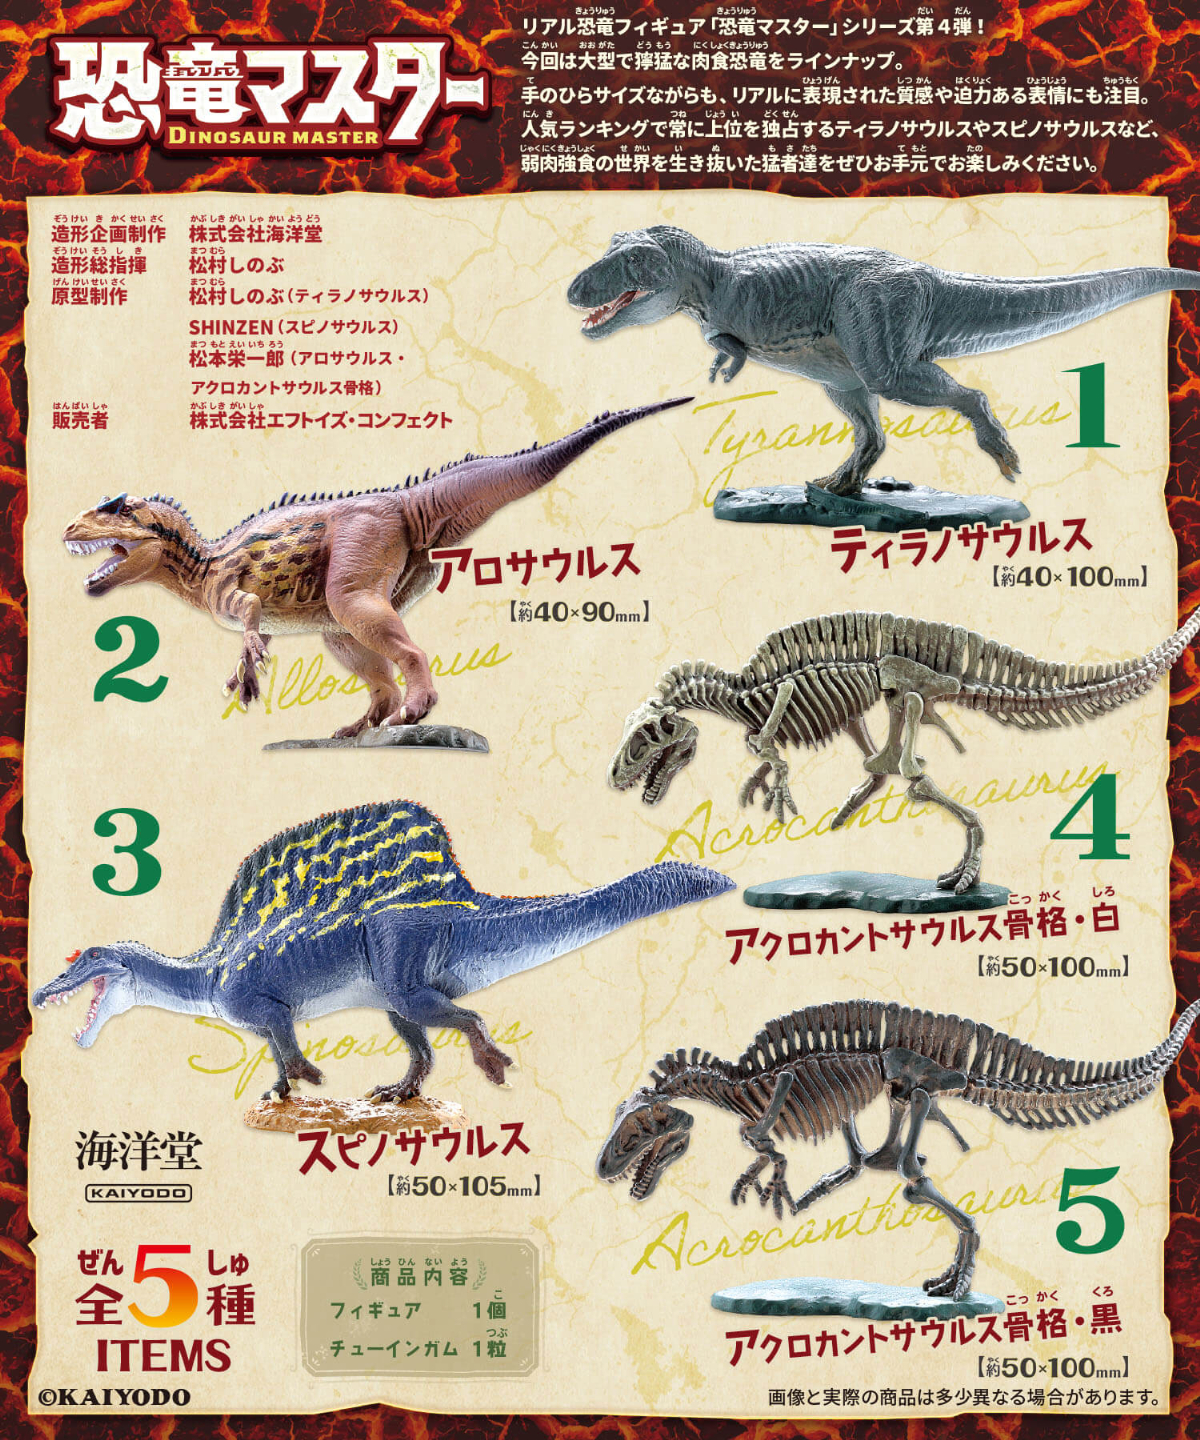 本格恐竜食玩フィギュア「恐竜マスター」第4弾